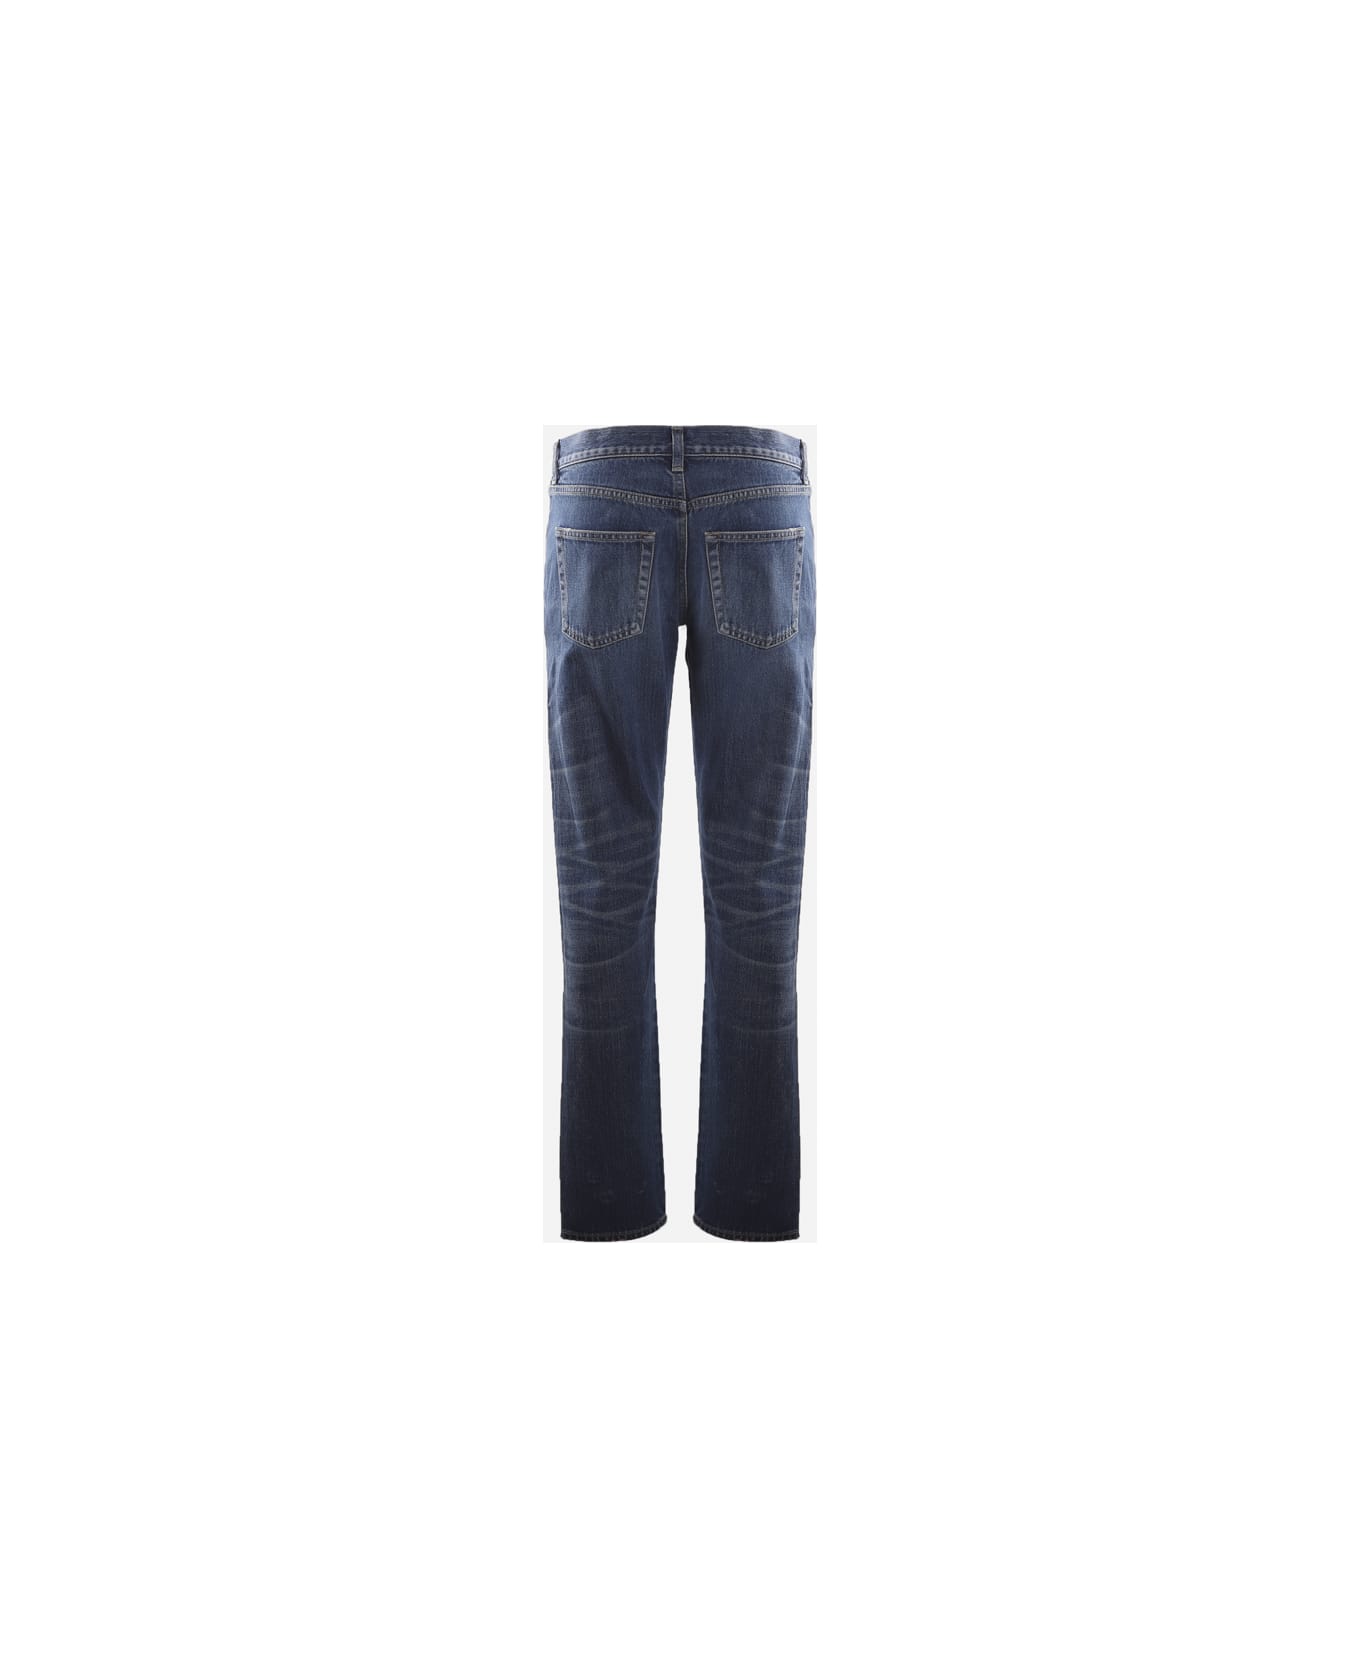 Saint Laurent Cotton Denim Boyfriend Jeans - Blue デニム